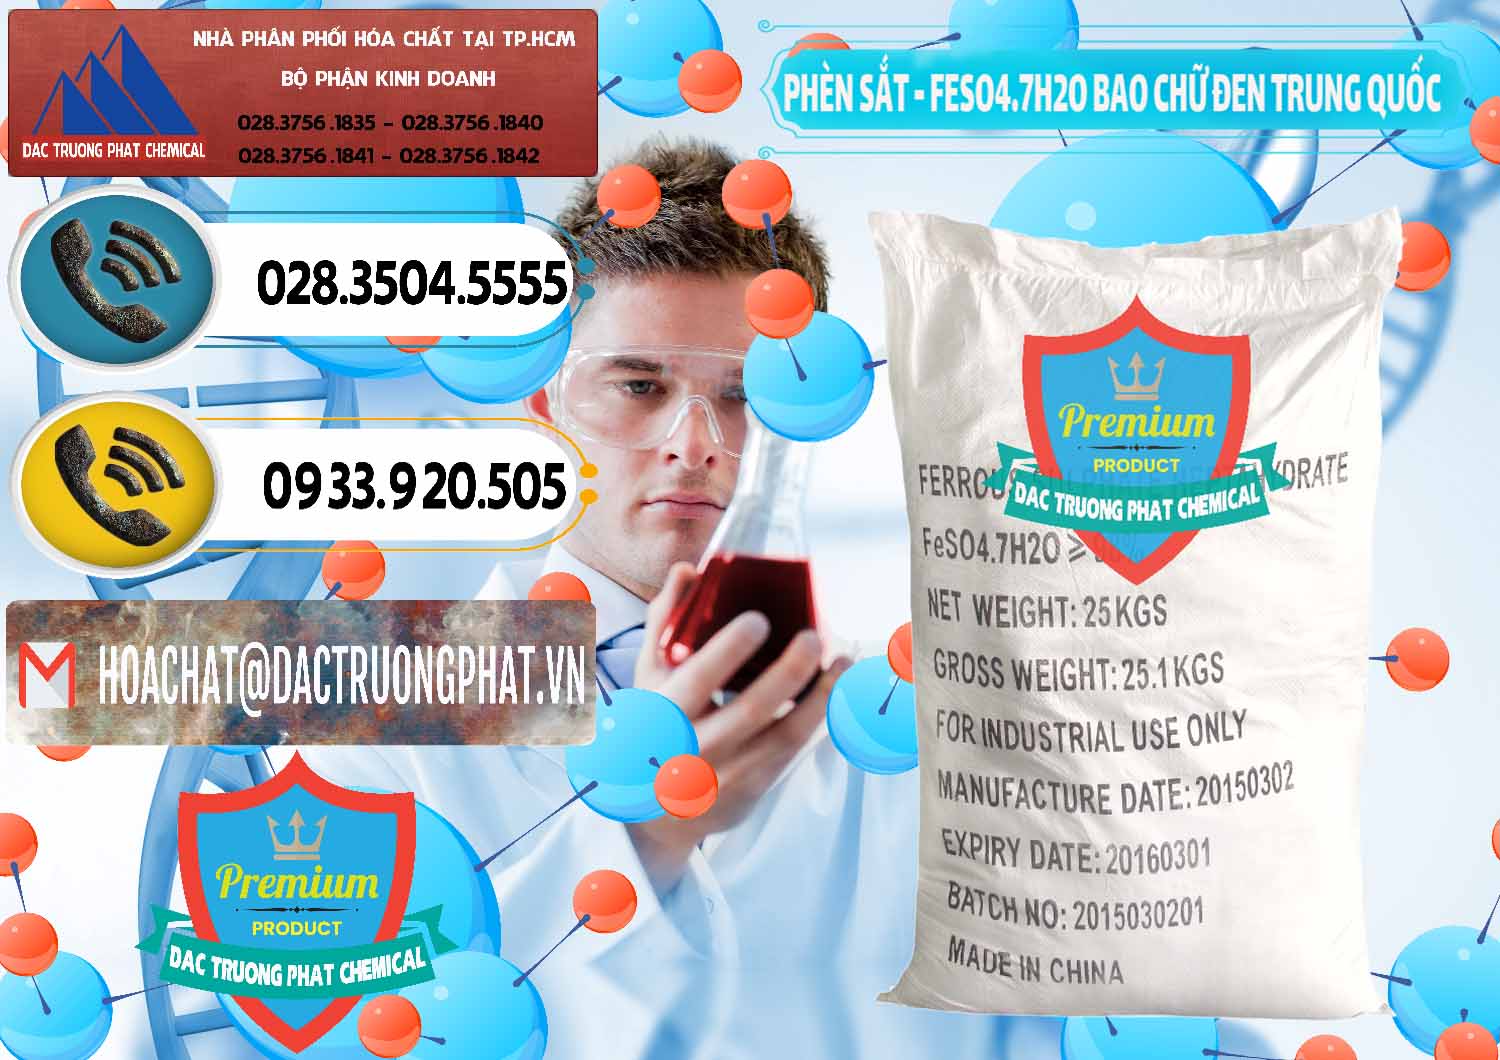 Đơn vị phân phối _ bán Phèn Sắt - FeSO4.7H2O Bao Chữ Đen Trung Quốc China - 0234 - Cty chuyên phân phối - bán hóa chất tại TP.HCM - hoachatdetnhuom.vn